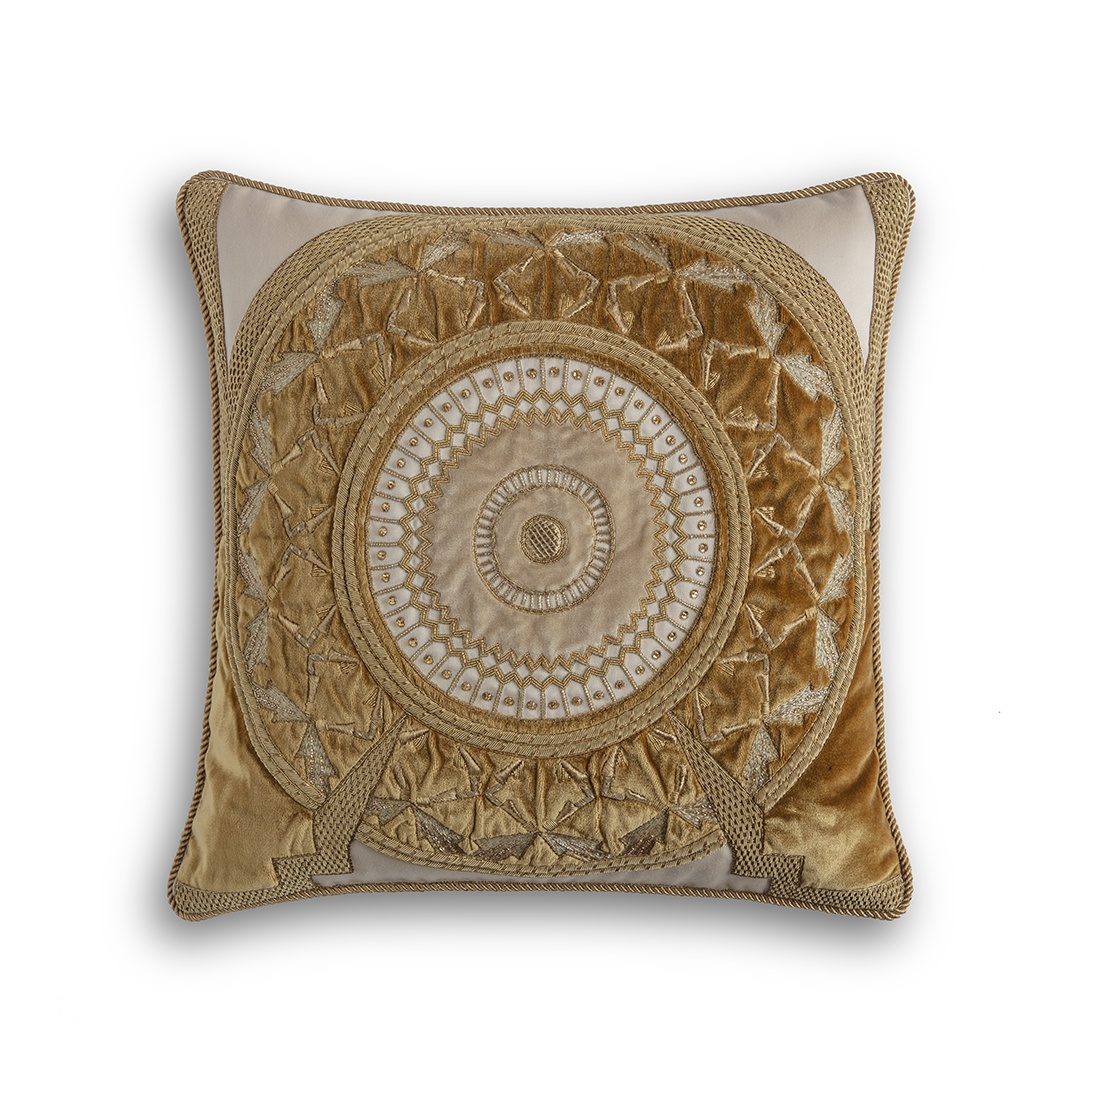 Ettore cushion in Capri silk velvet - Cinnamon, Biscuit